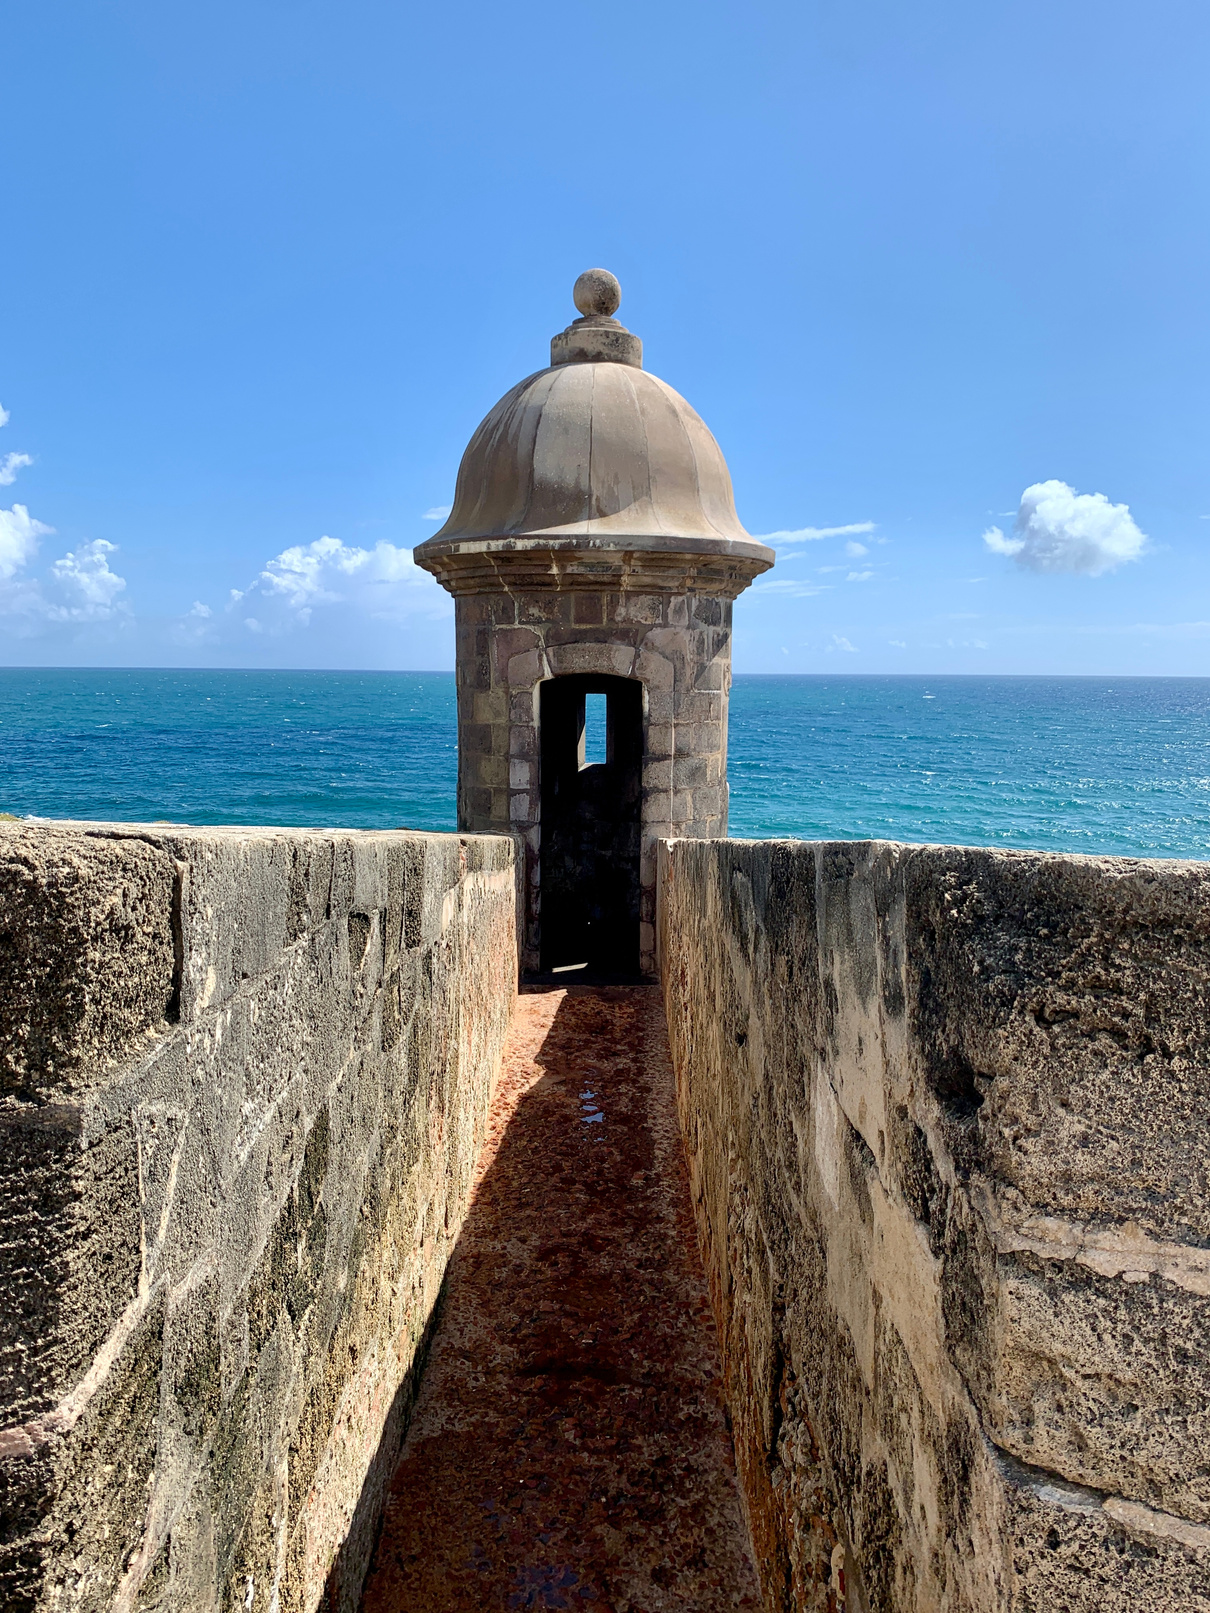 Symmetrical View of the Garita del Diablo, Puerto Rico